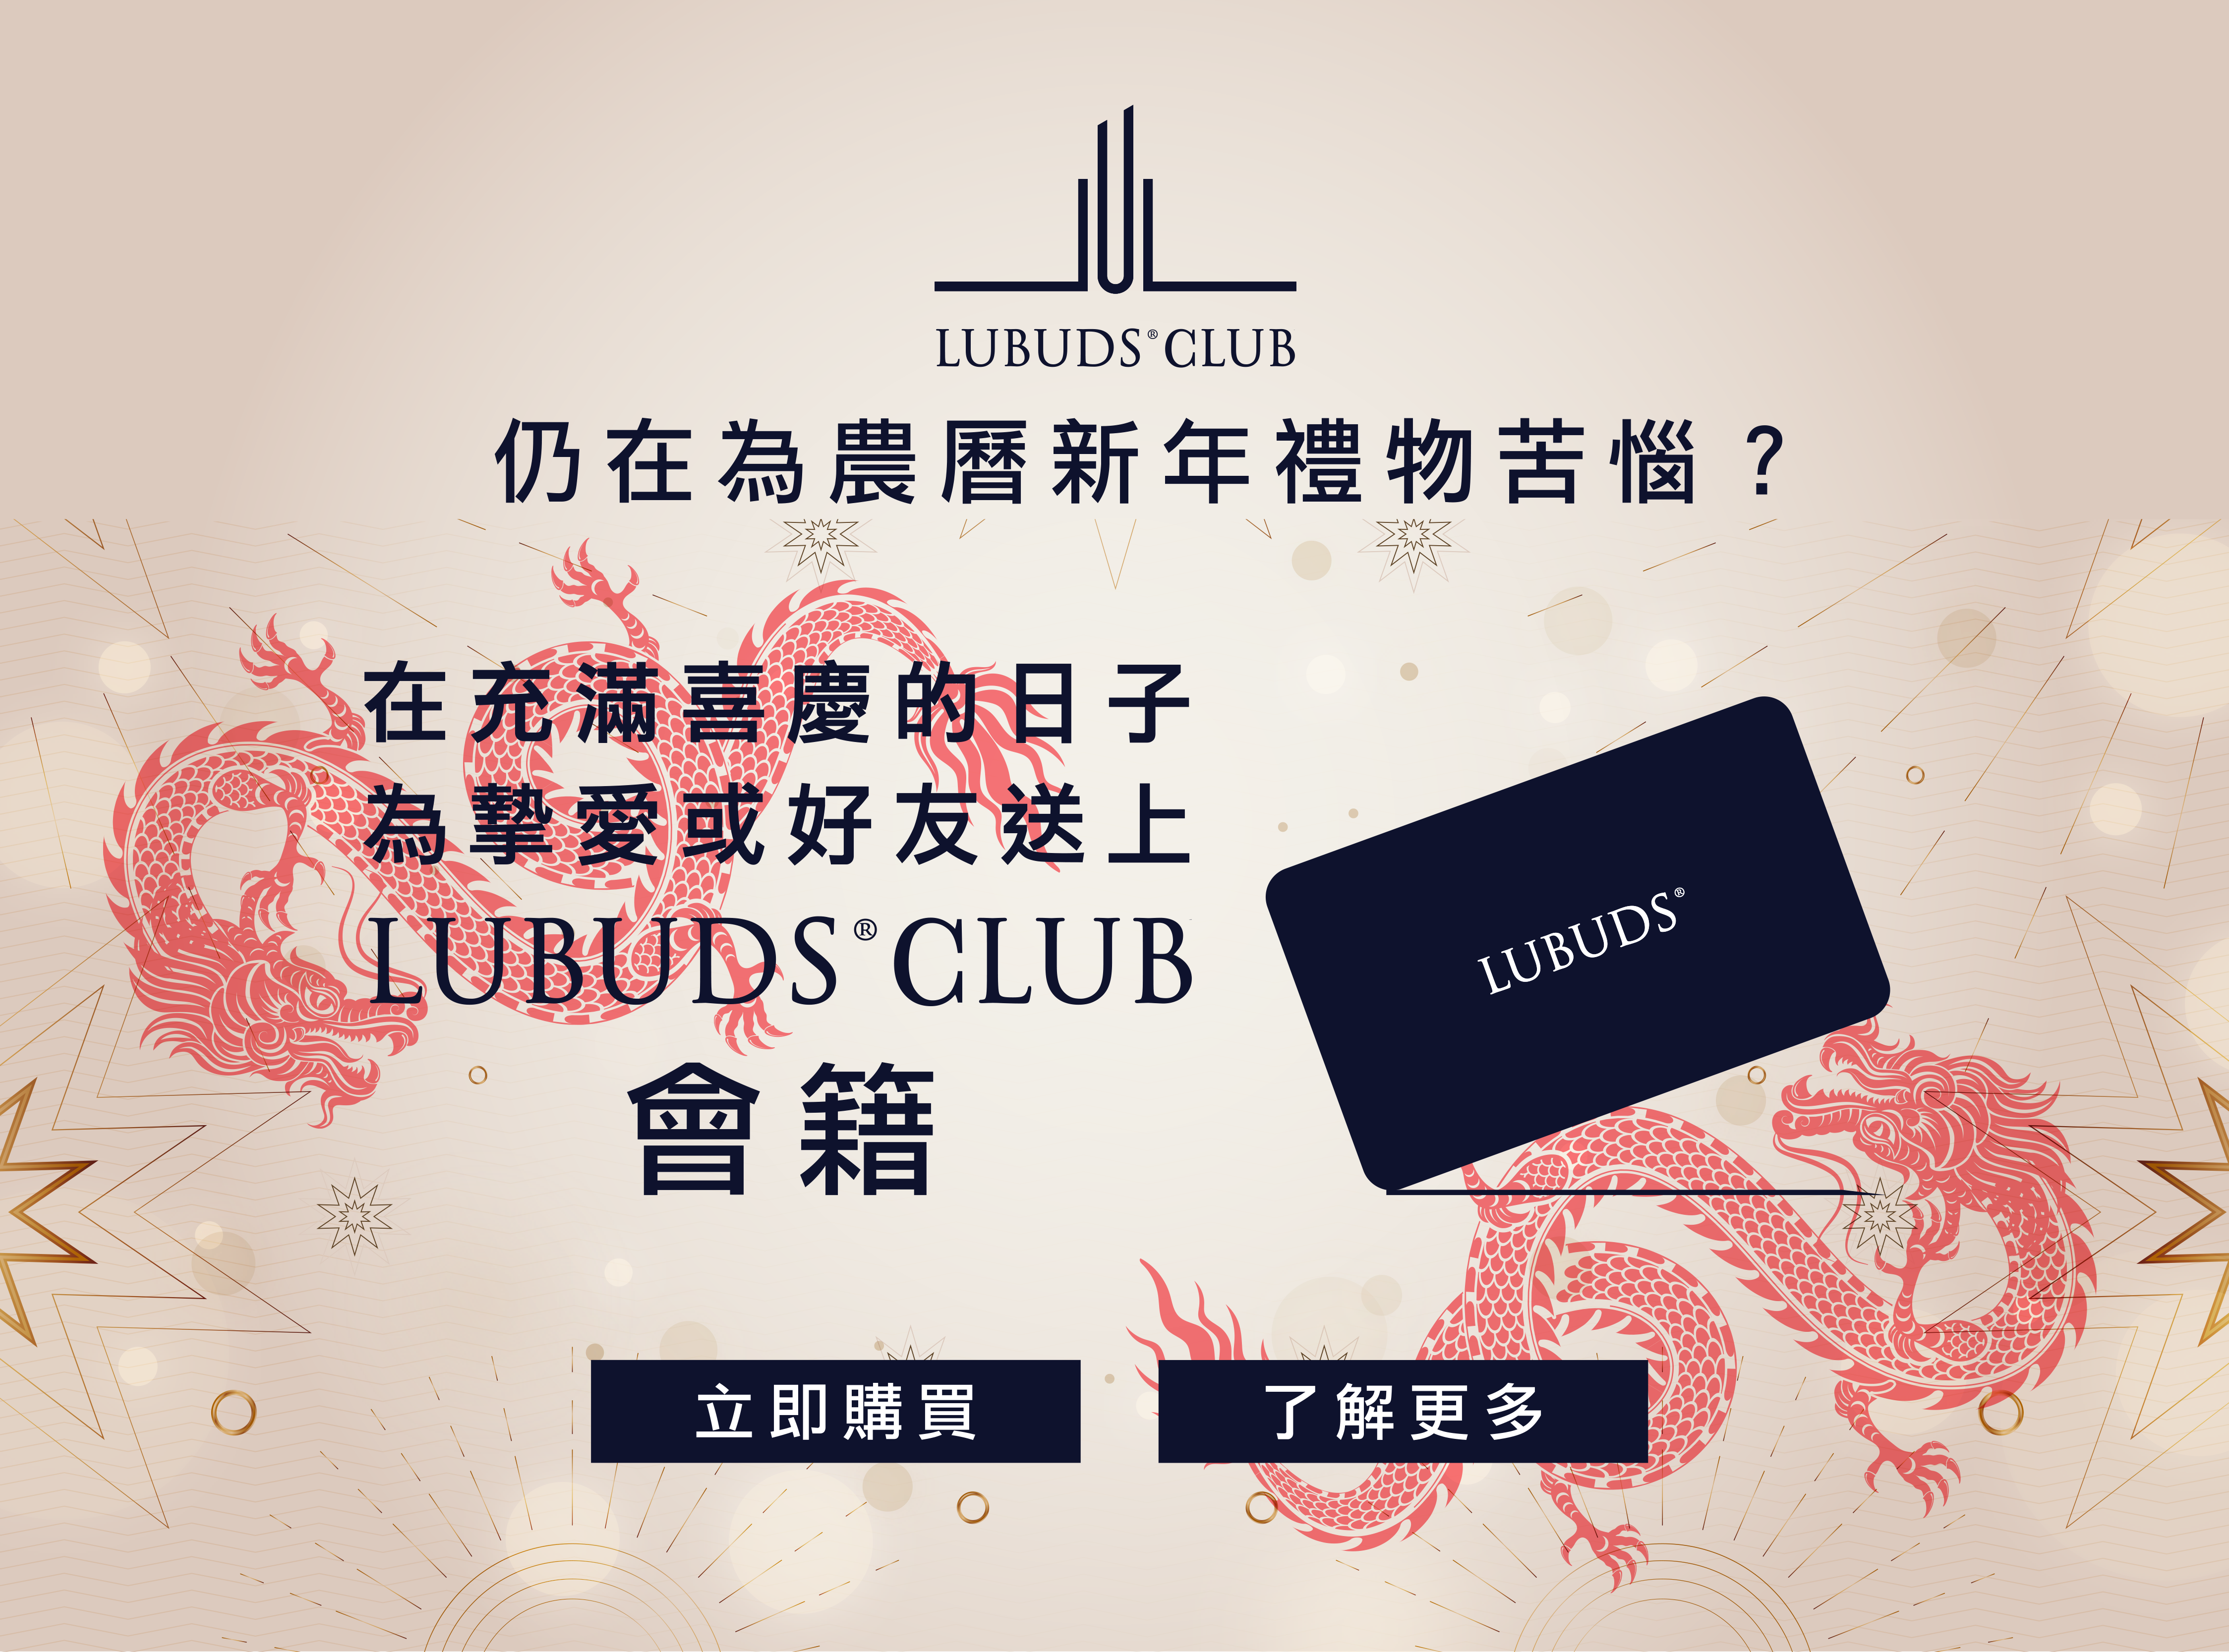 Lubuds Club